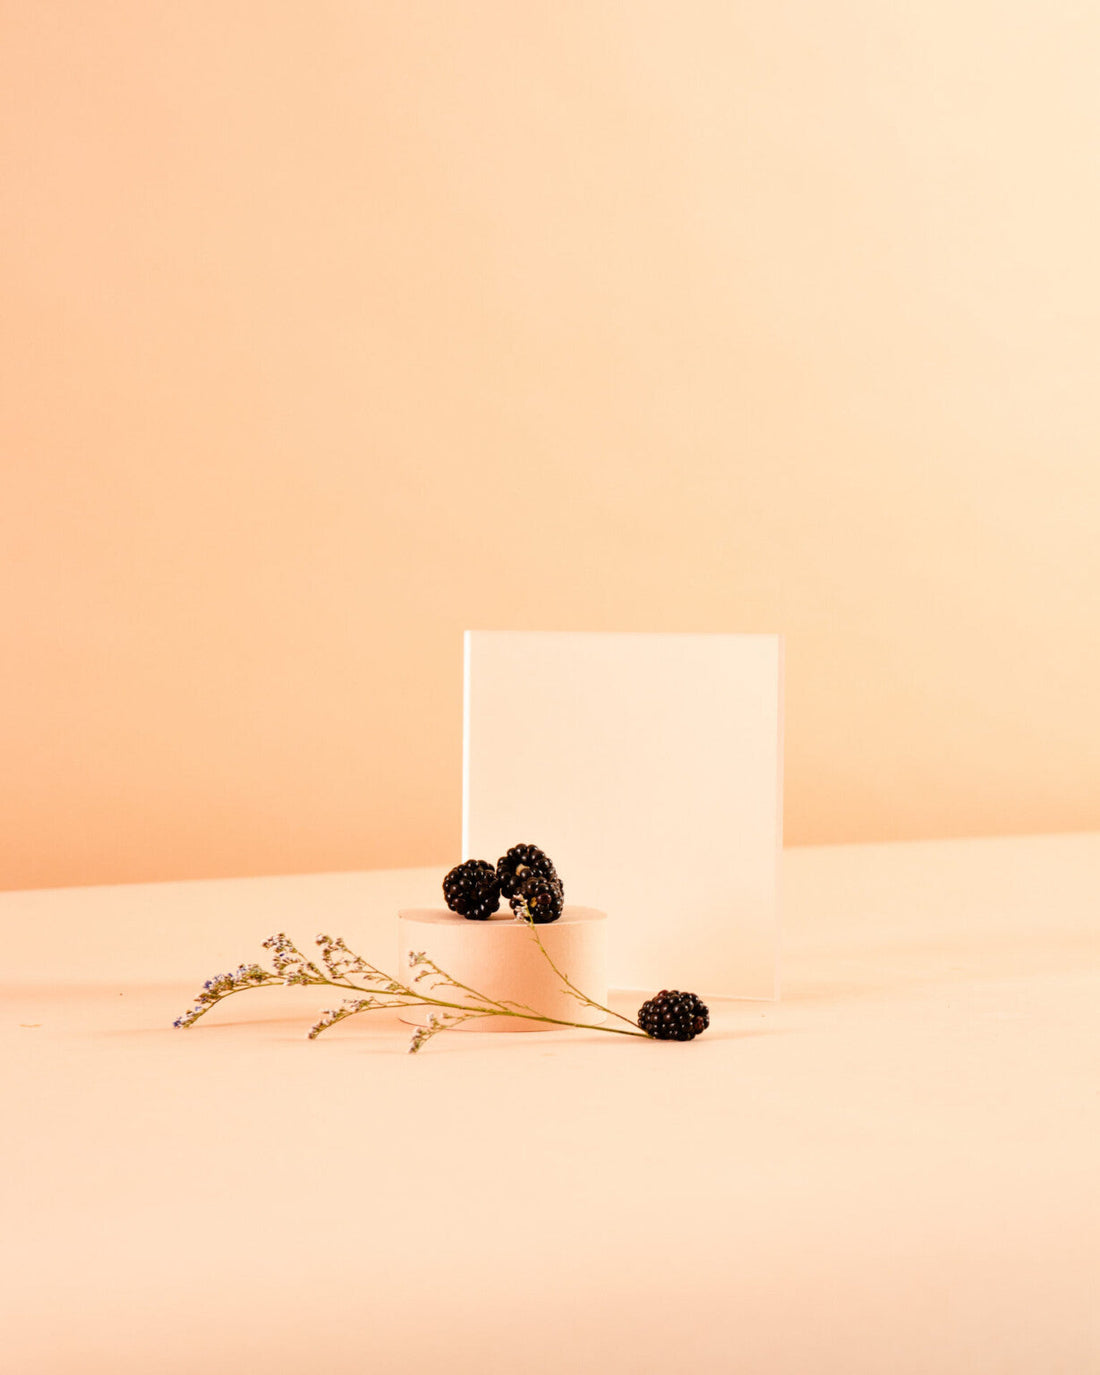 3 Simple Two-Ingredient Recipes Using Blackberries